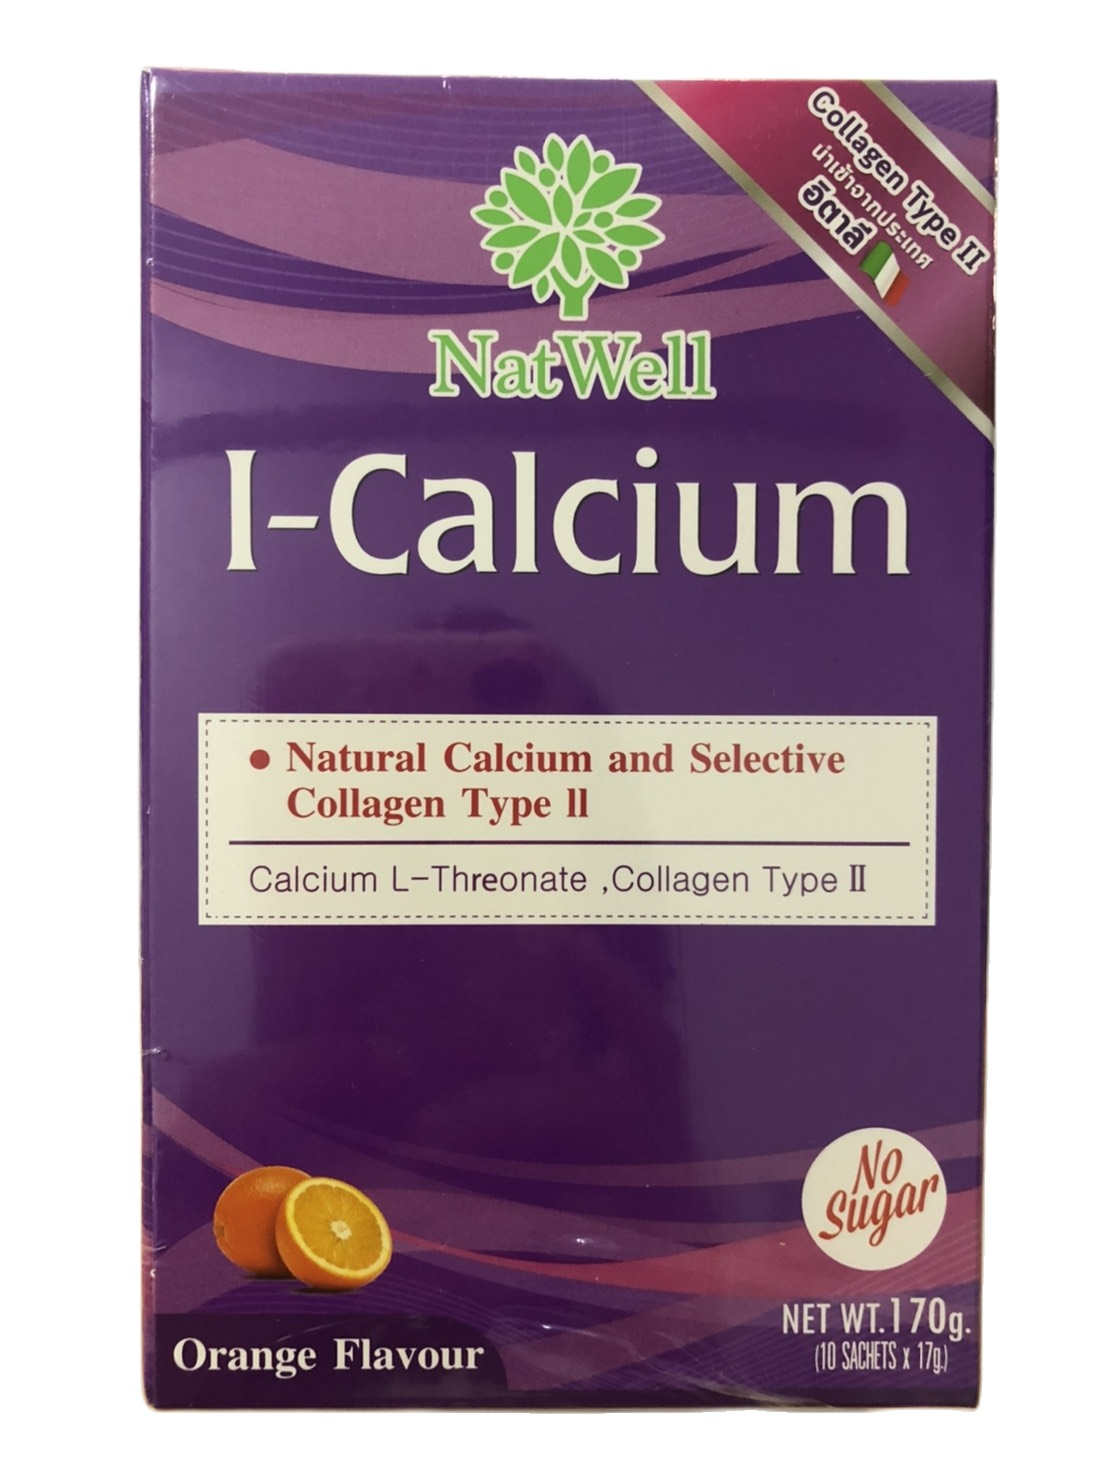 NatWell I-Calcium แนทเวลล์ ไอ แคลเซียม  แคลเซียมผสมคอลลาเจน บำรุงกระดูกและข้อ